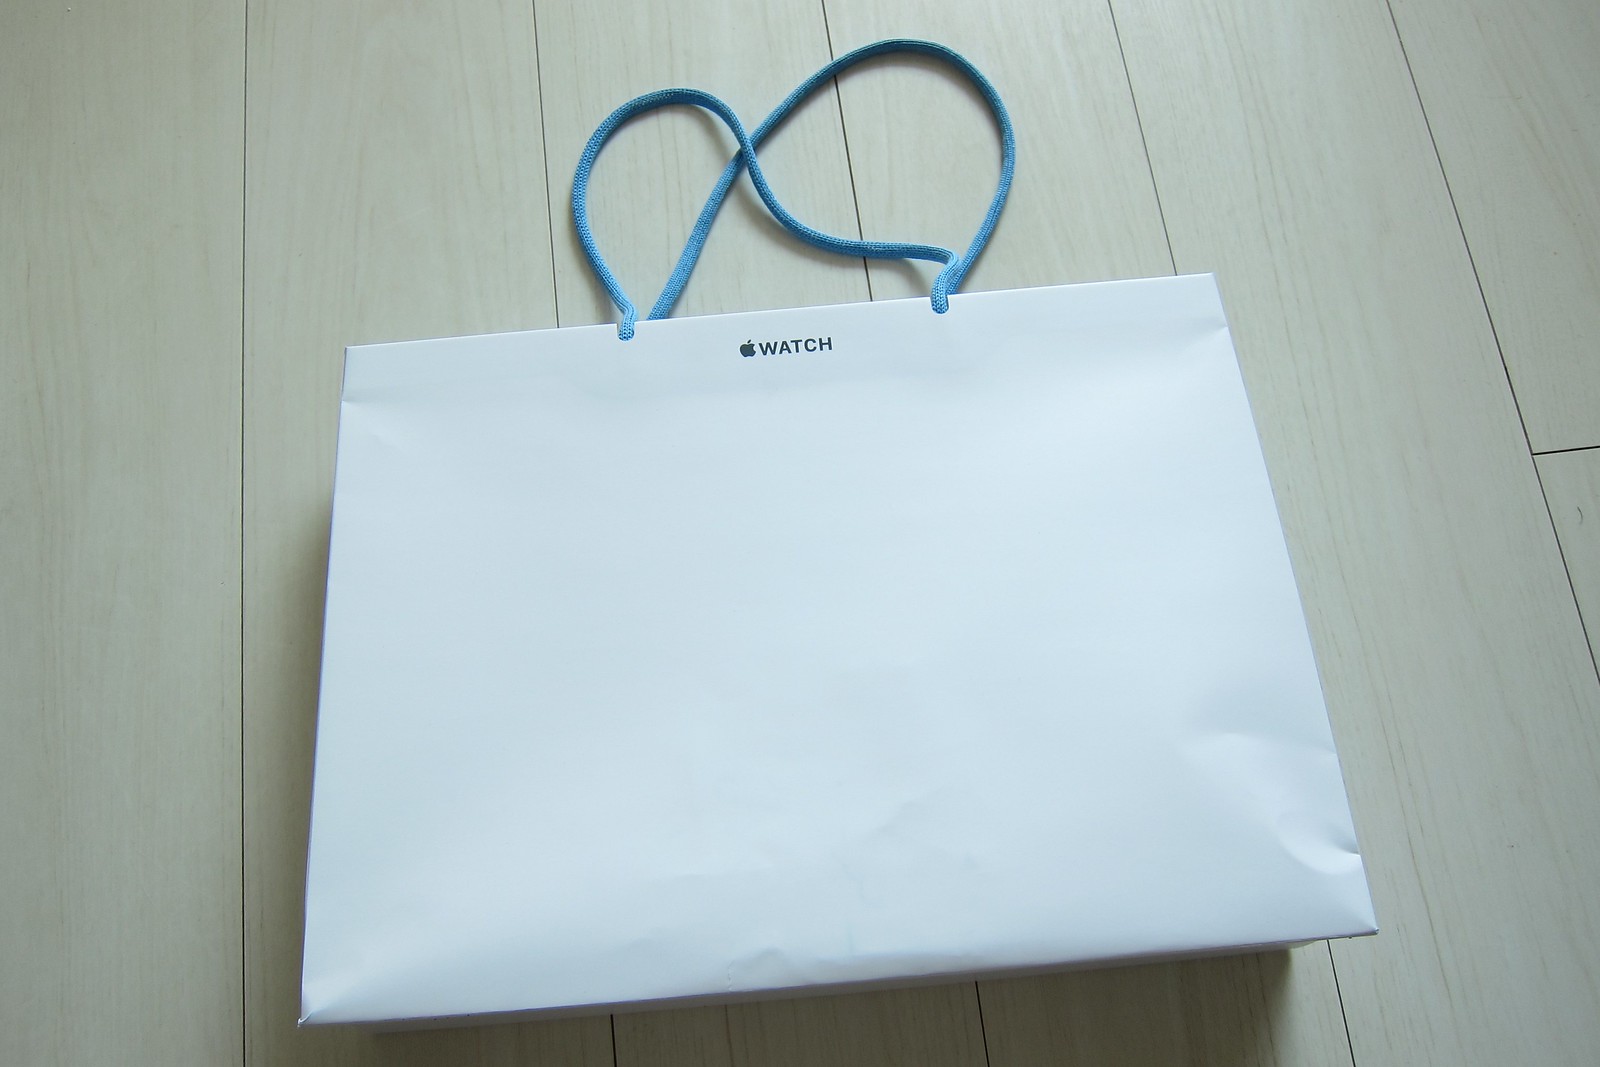 Apple Watch shop bag by Isetan Shinjuku